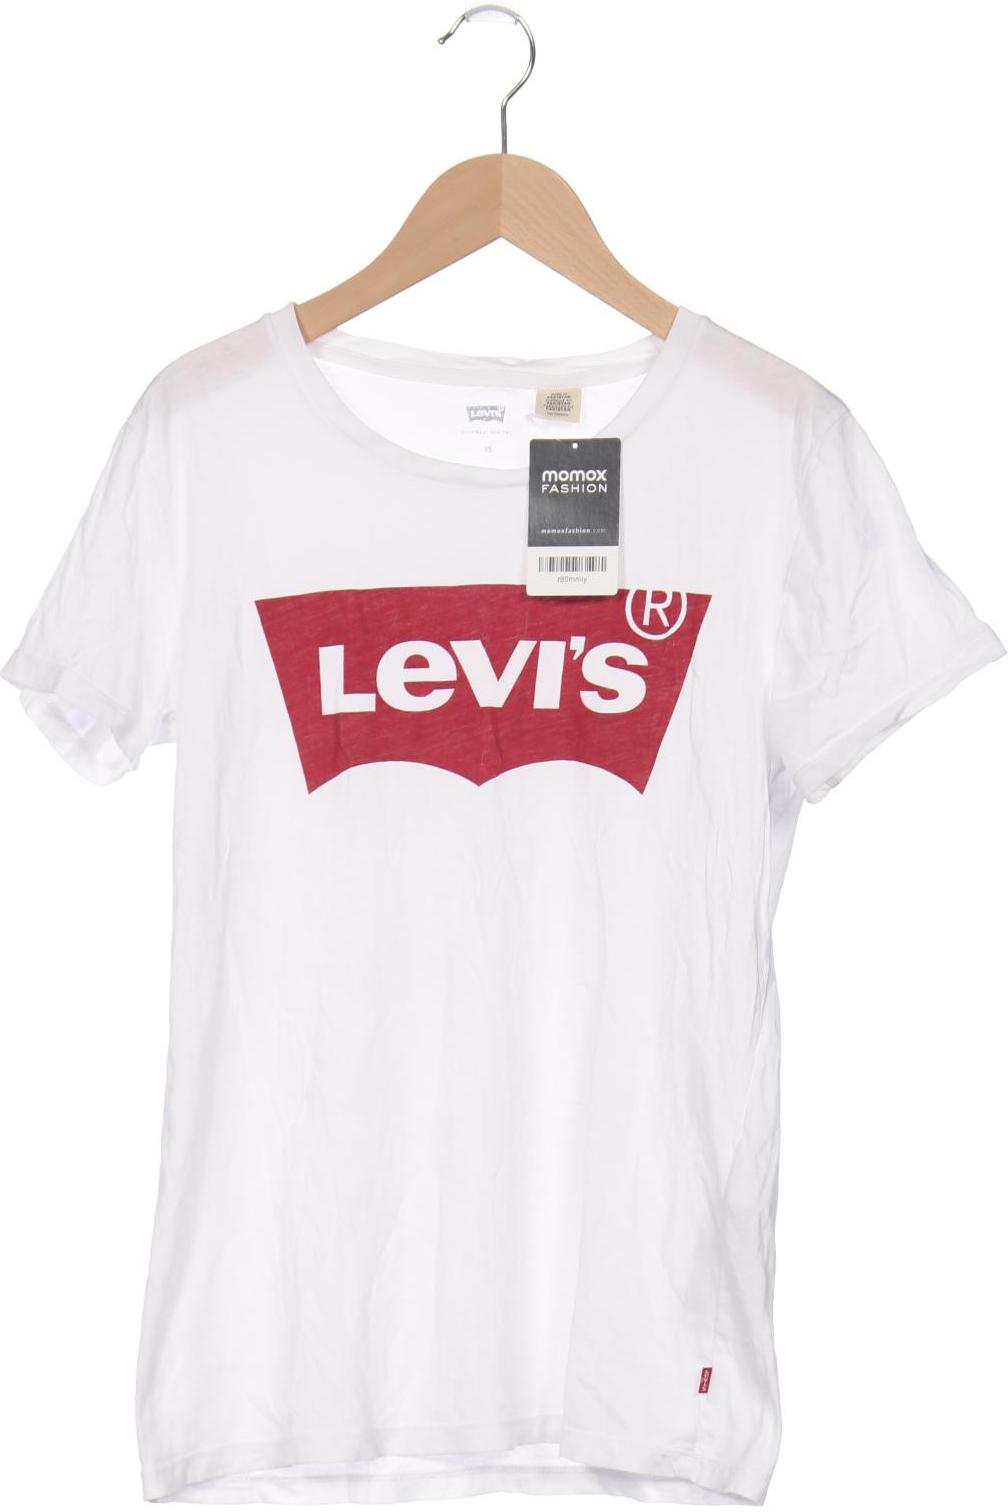 Levis Damen T-Shirt, weiß von Levis